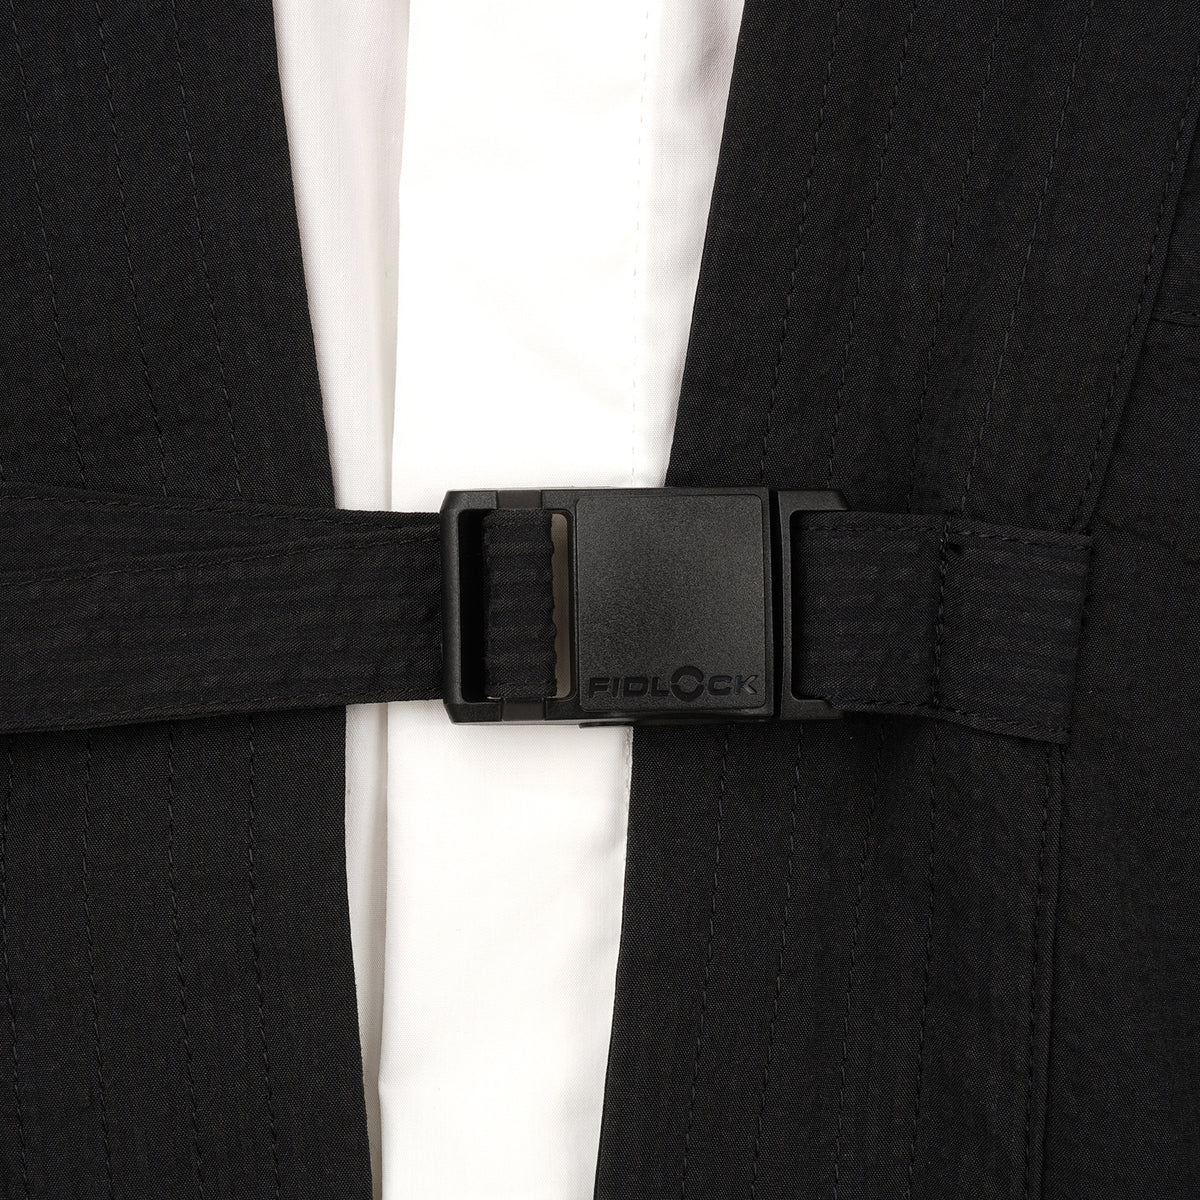 Nilmance | Kimono Jacket KNJ-01 Black - Concrete